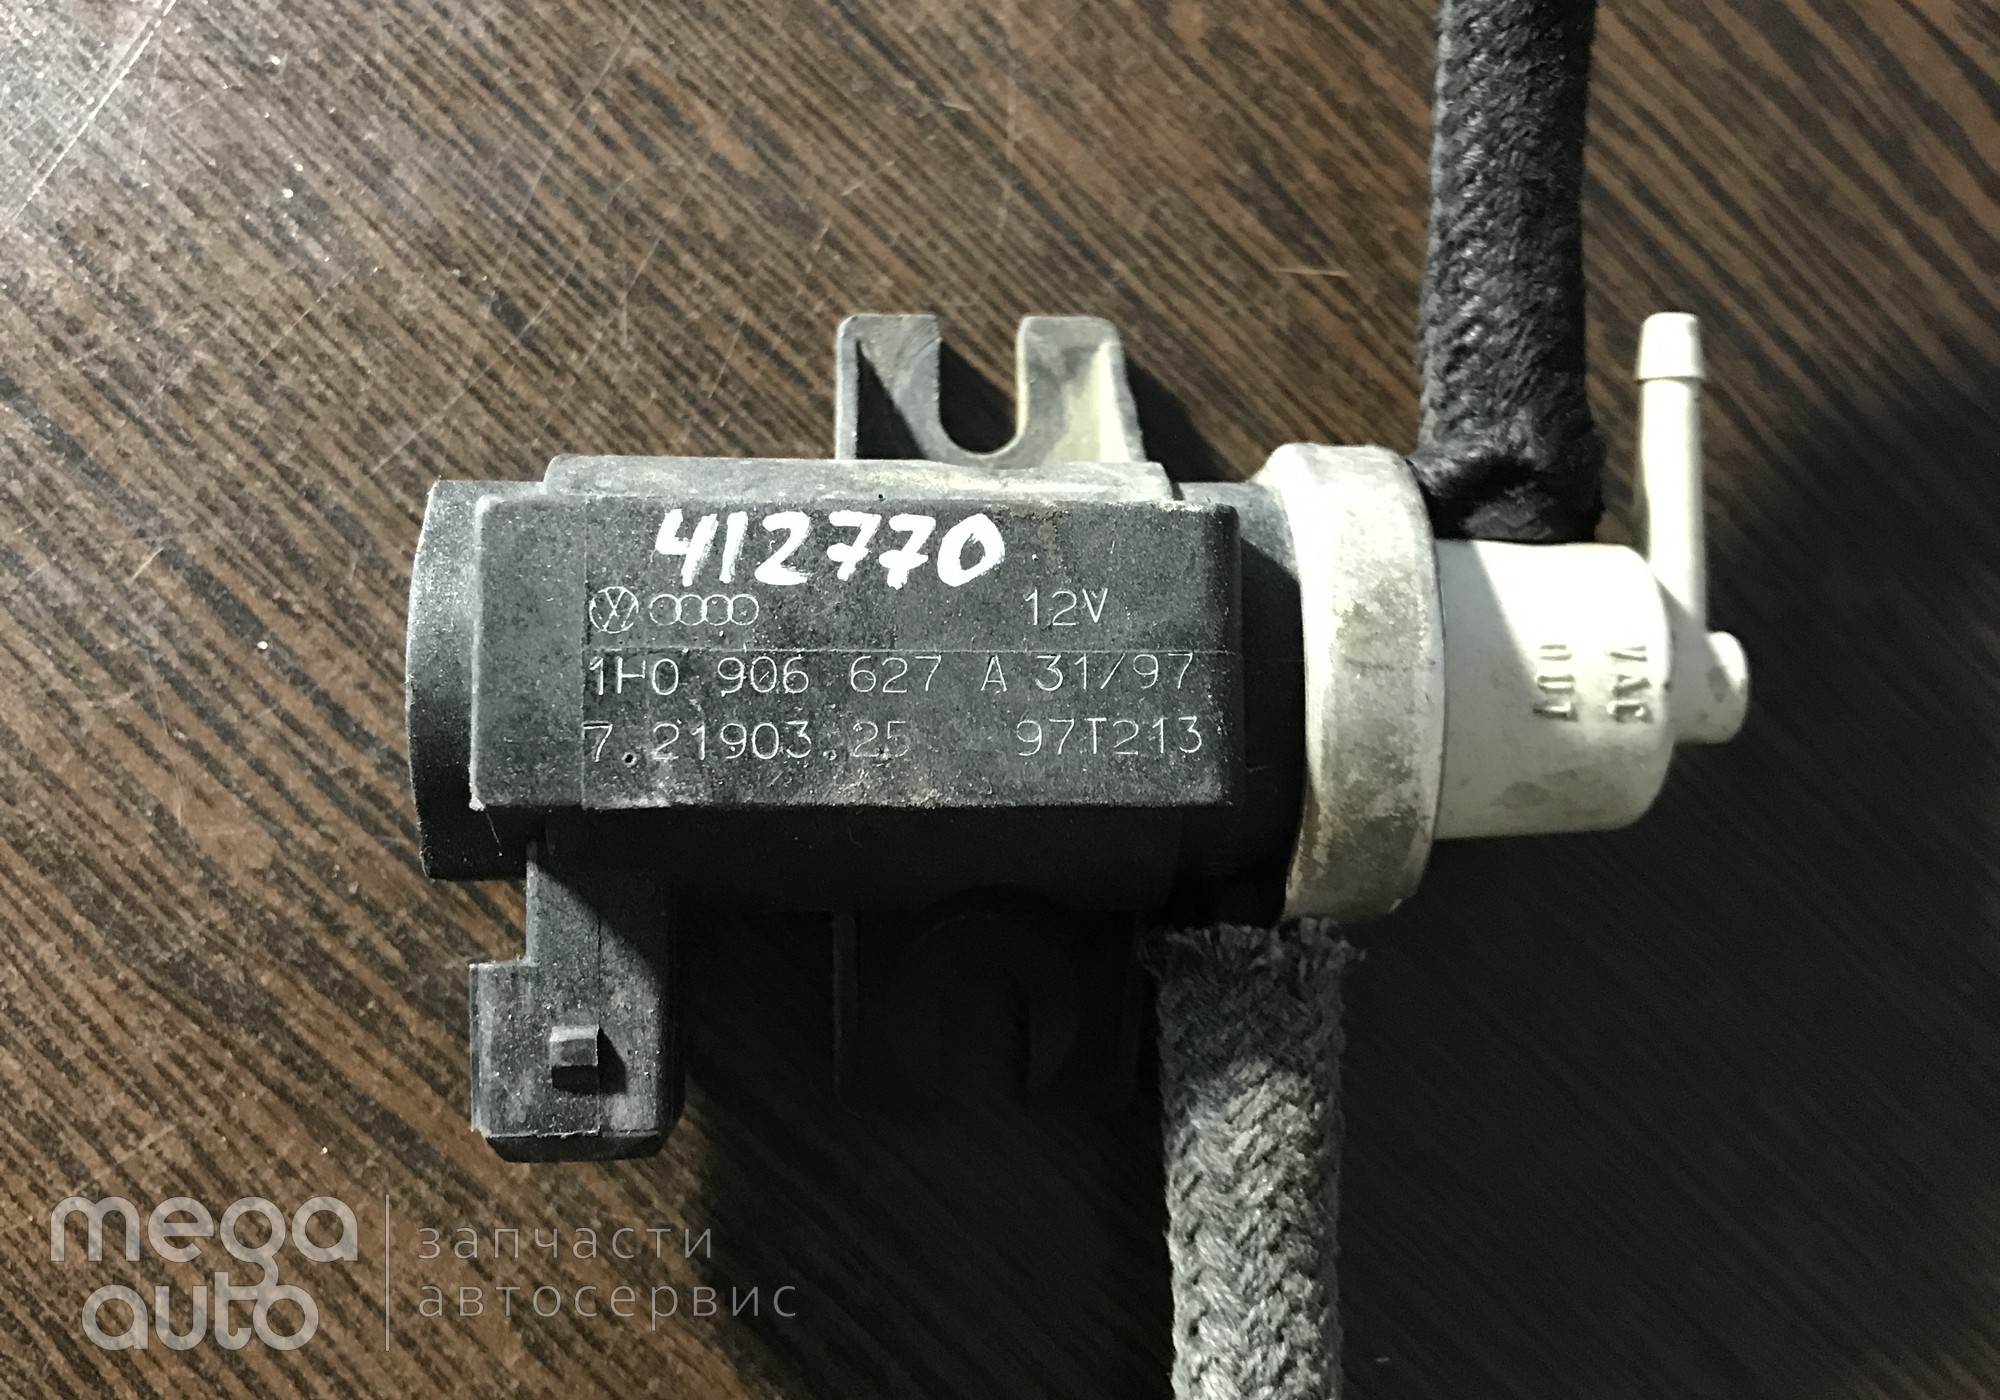 1H0906627A Клапан электромагнитный VAG для Skoda Octavia I (с 1996 по 2010)